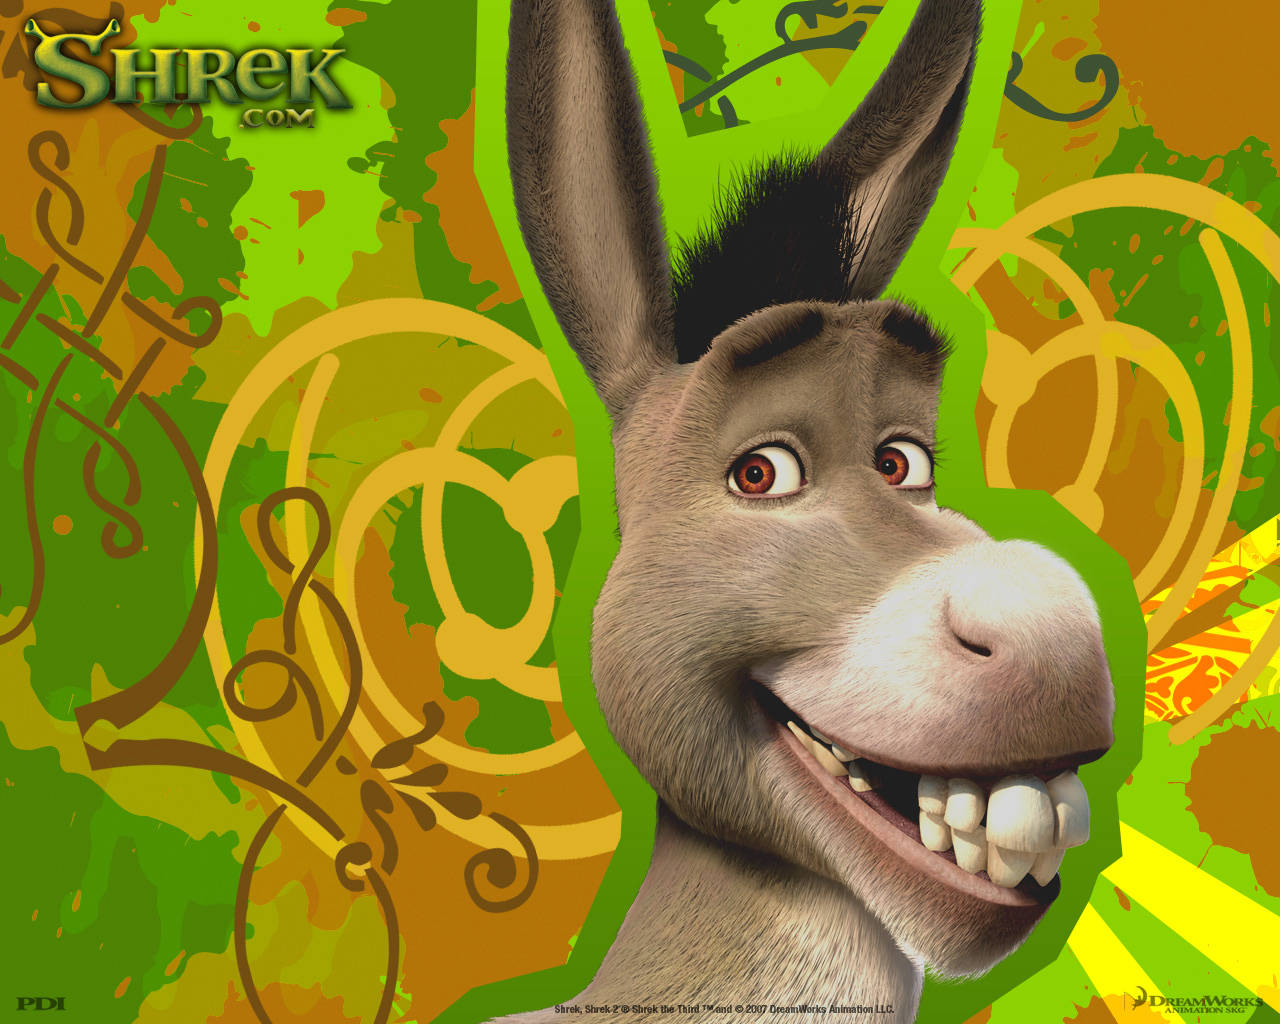 Smiling Donkey From Shrek Wallpaper